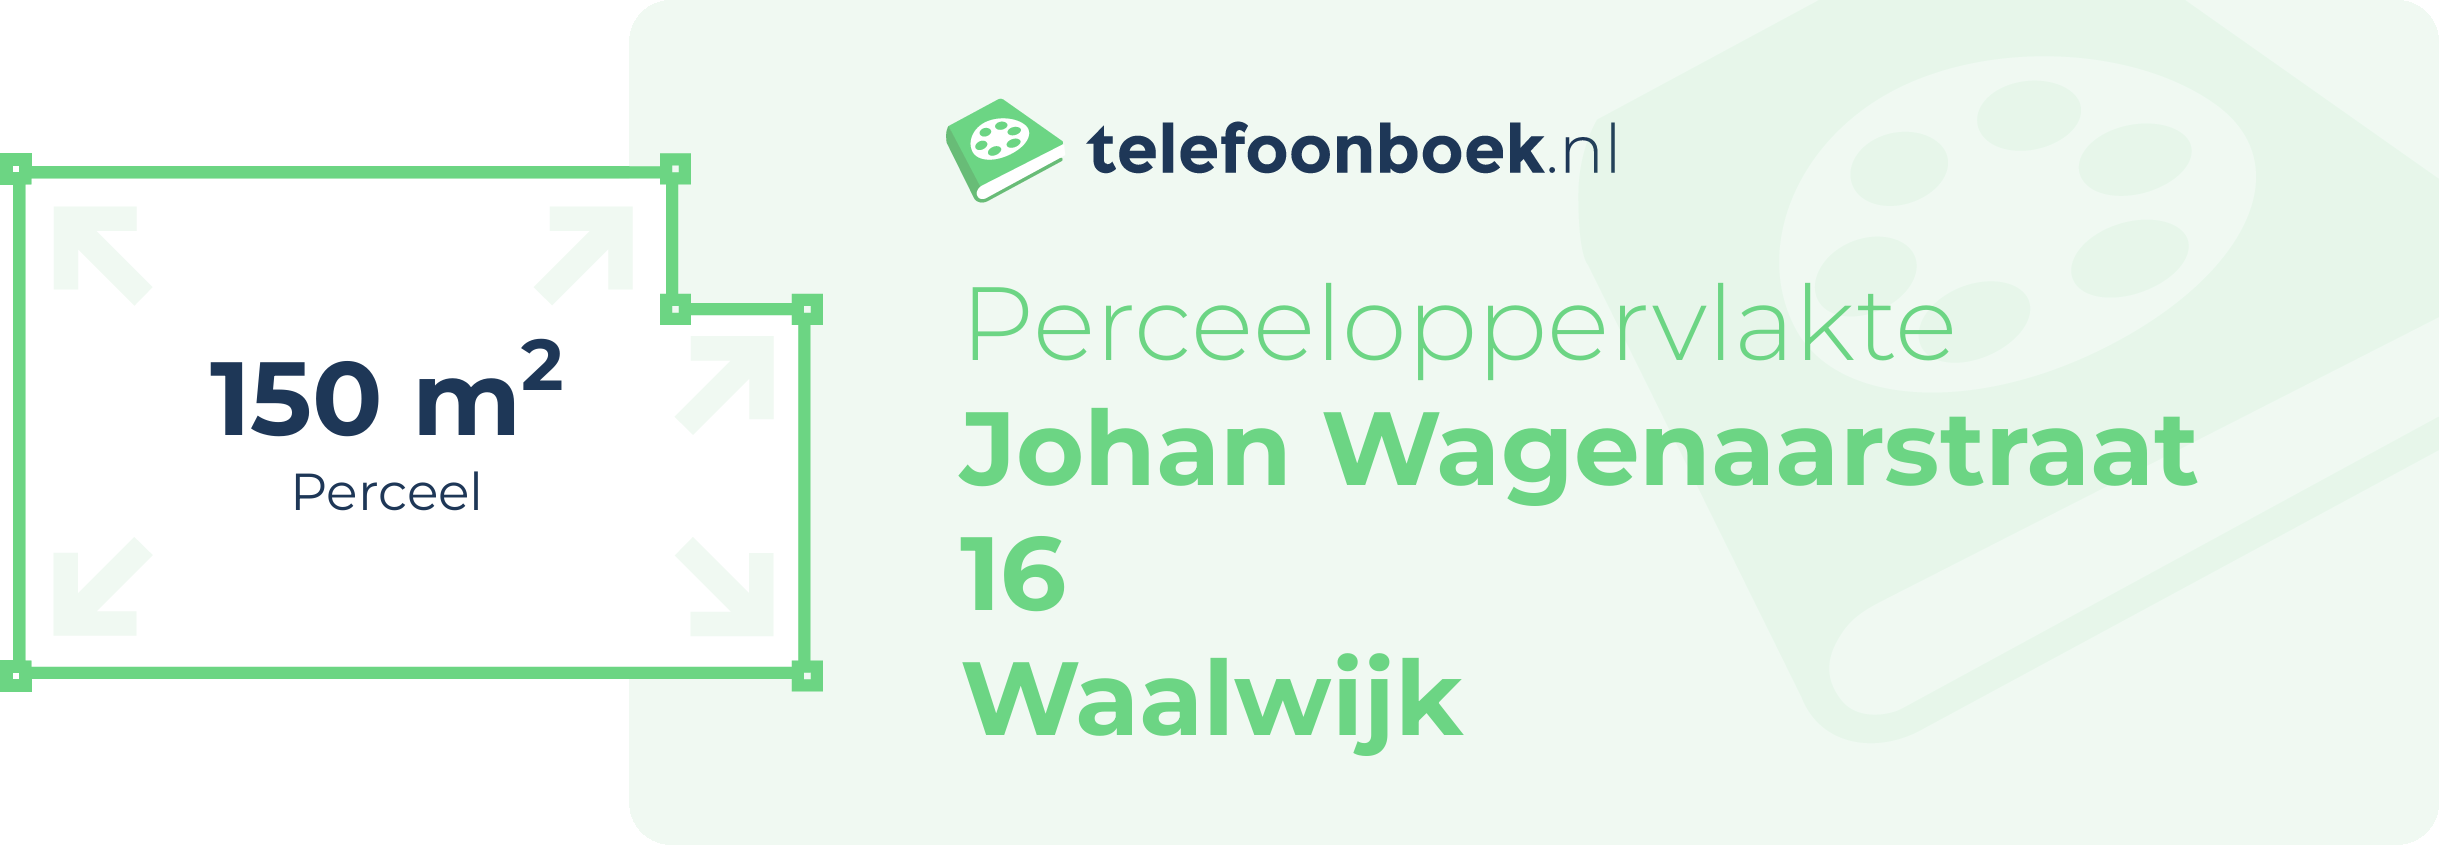 Perceeloppervlakte Johan Wagenaarstraat 16 Waalwijk